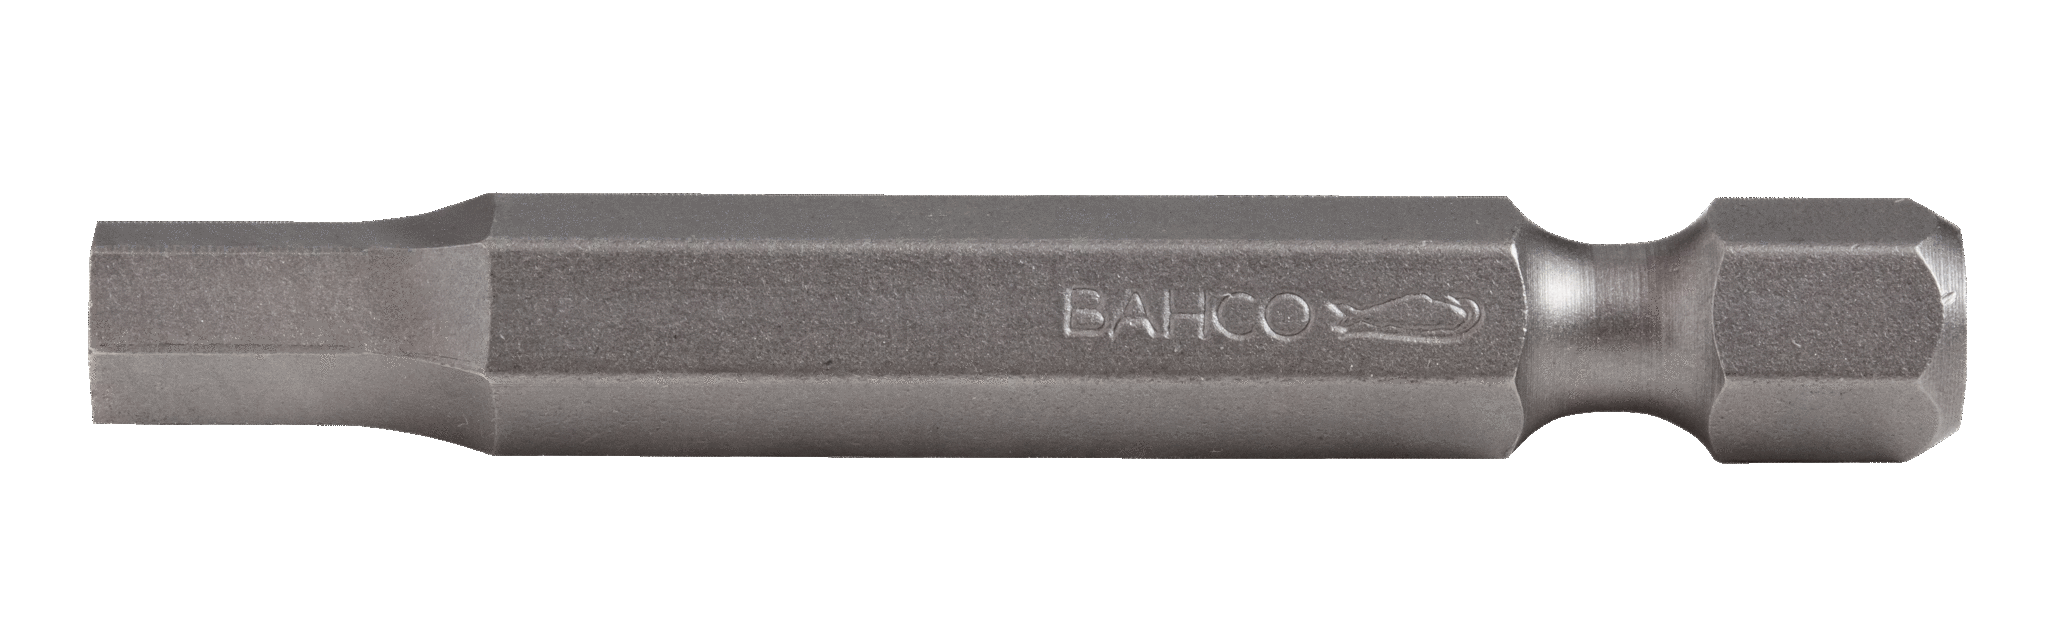 Стандартные биты для отверток под винты с шестигранной головкой, дюймовые размеры, 50 мм BAHCO 59S/50H5/32